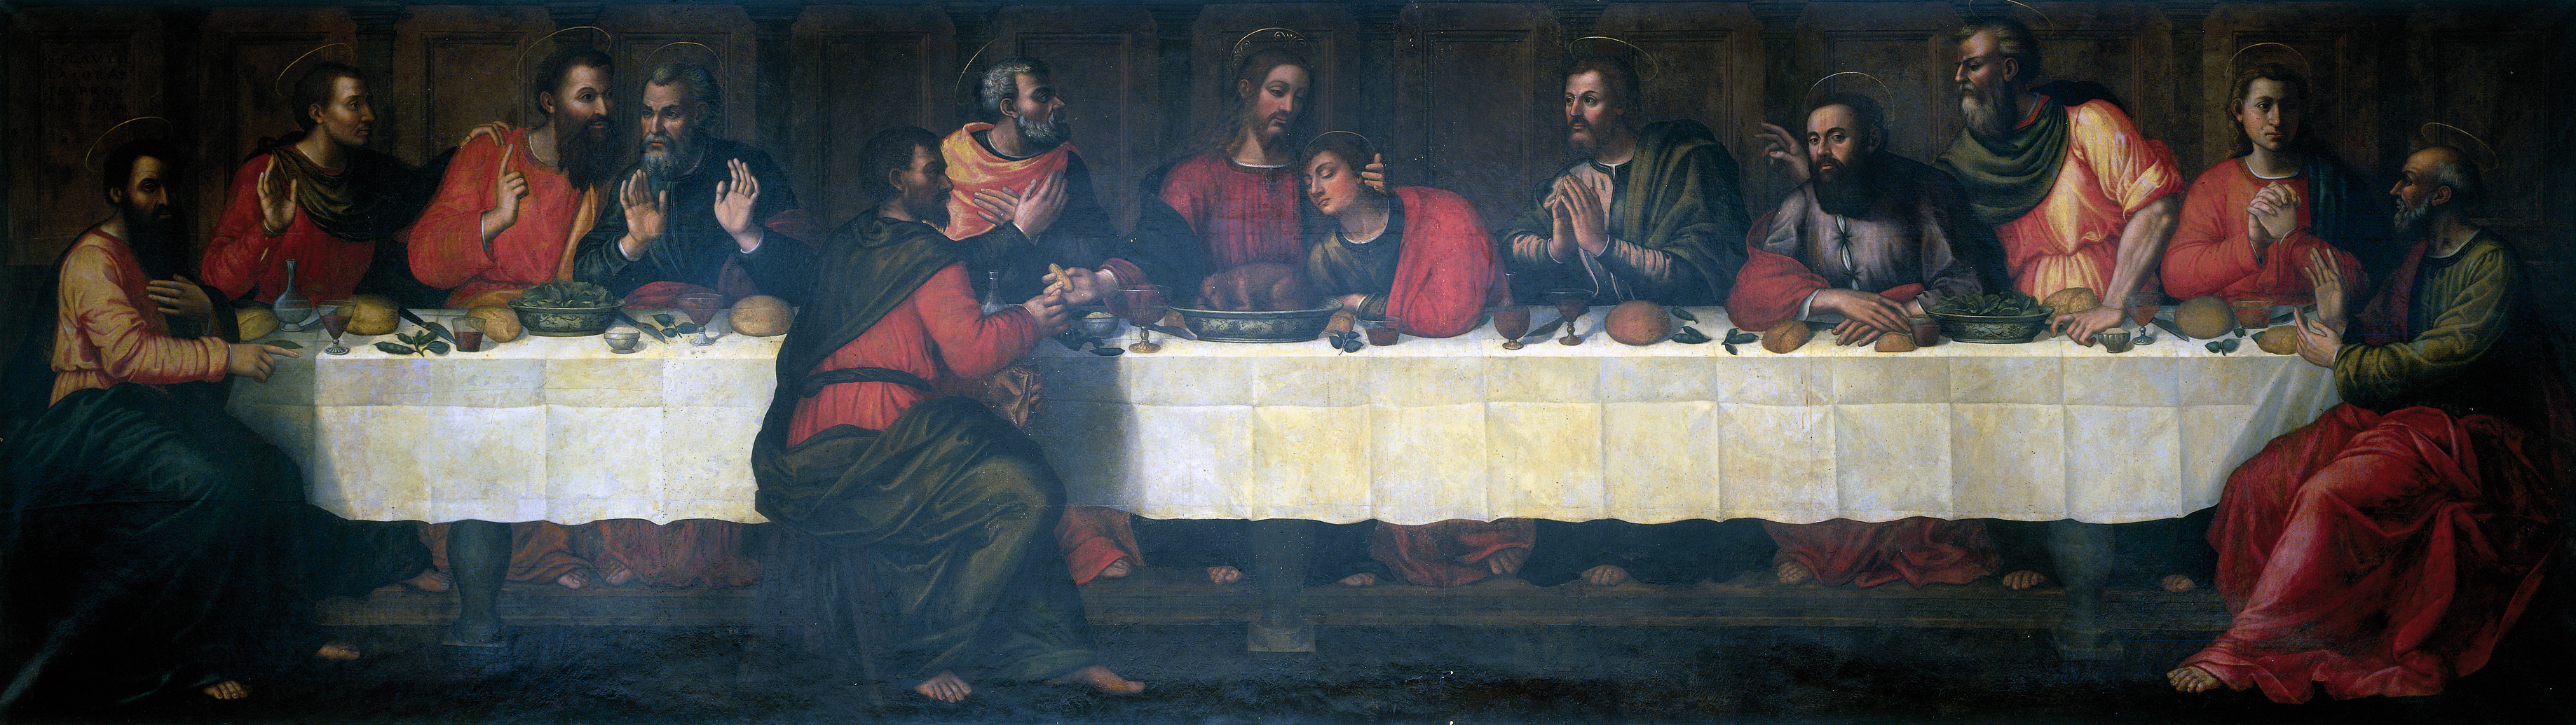 Таємна вечеря by Plautilla Nelli - 16 сторіччя 